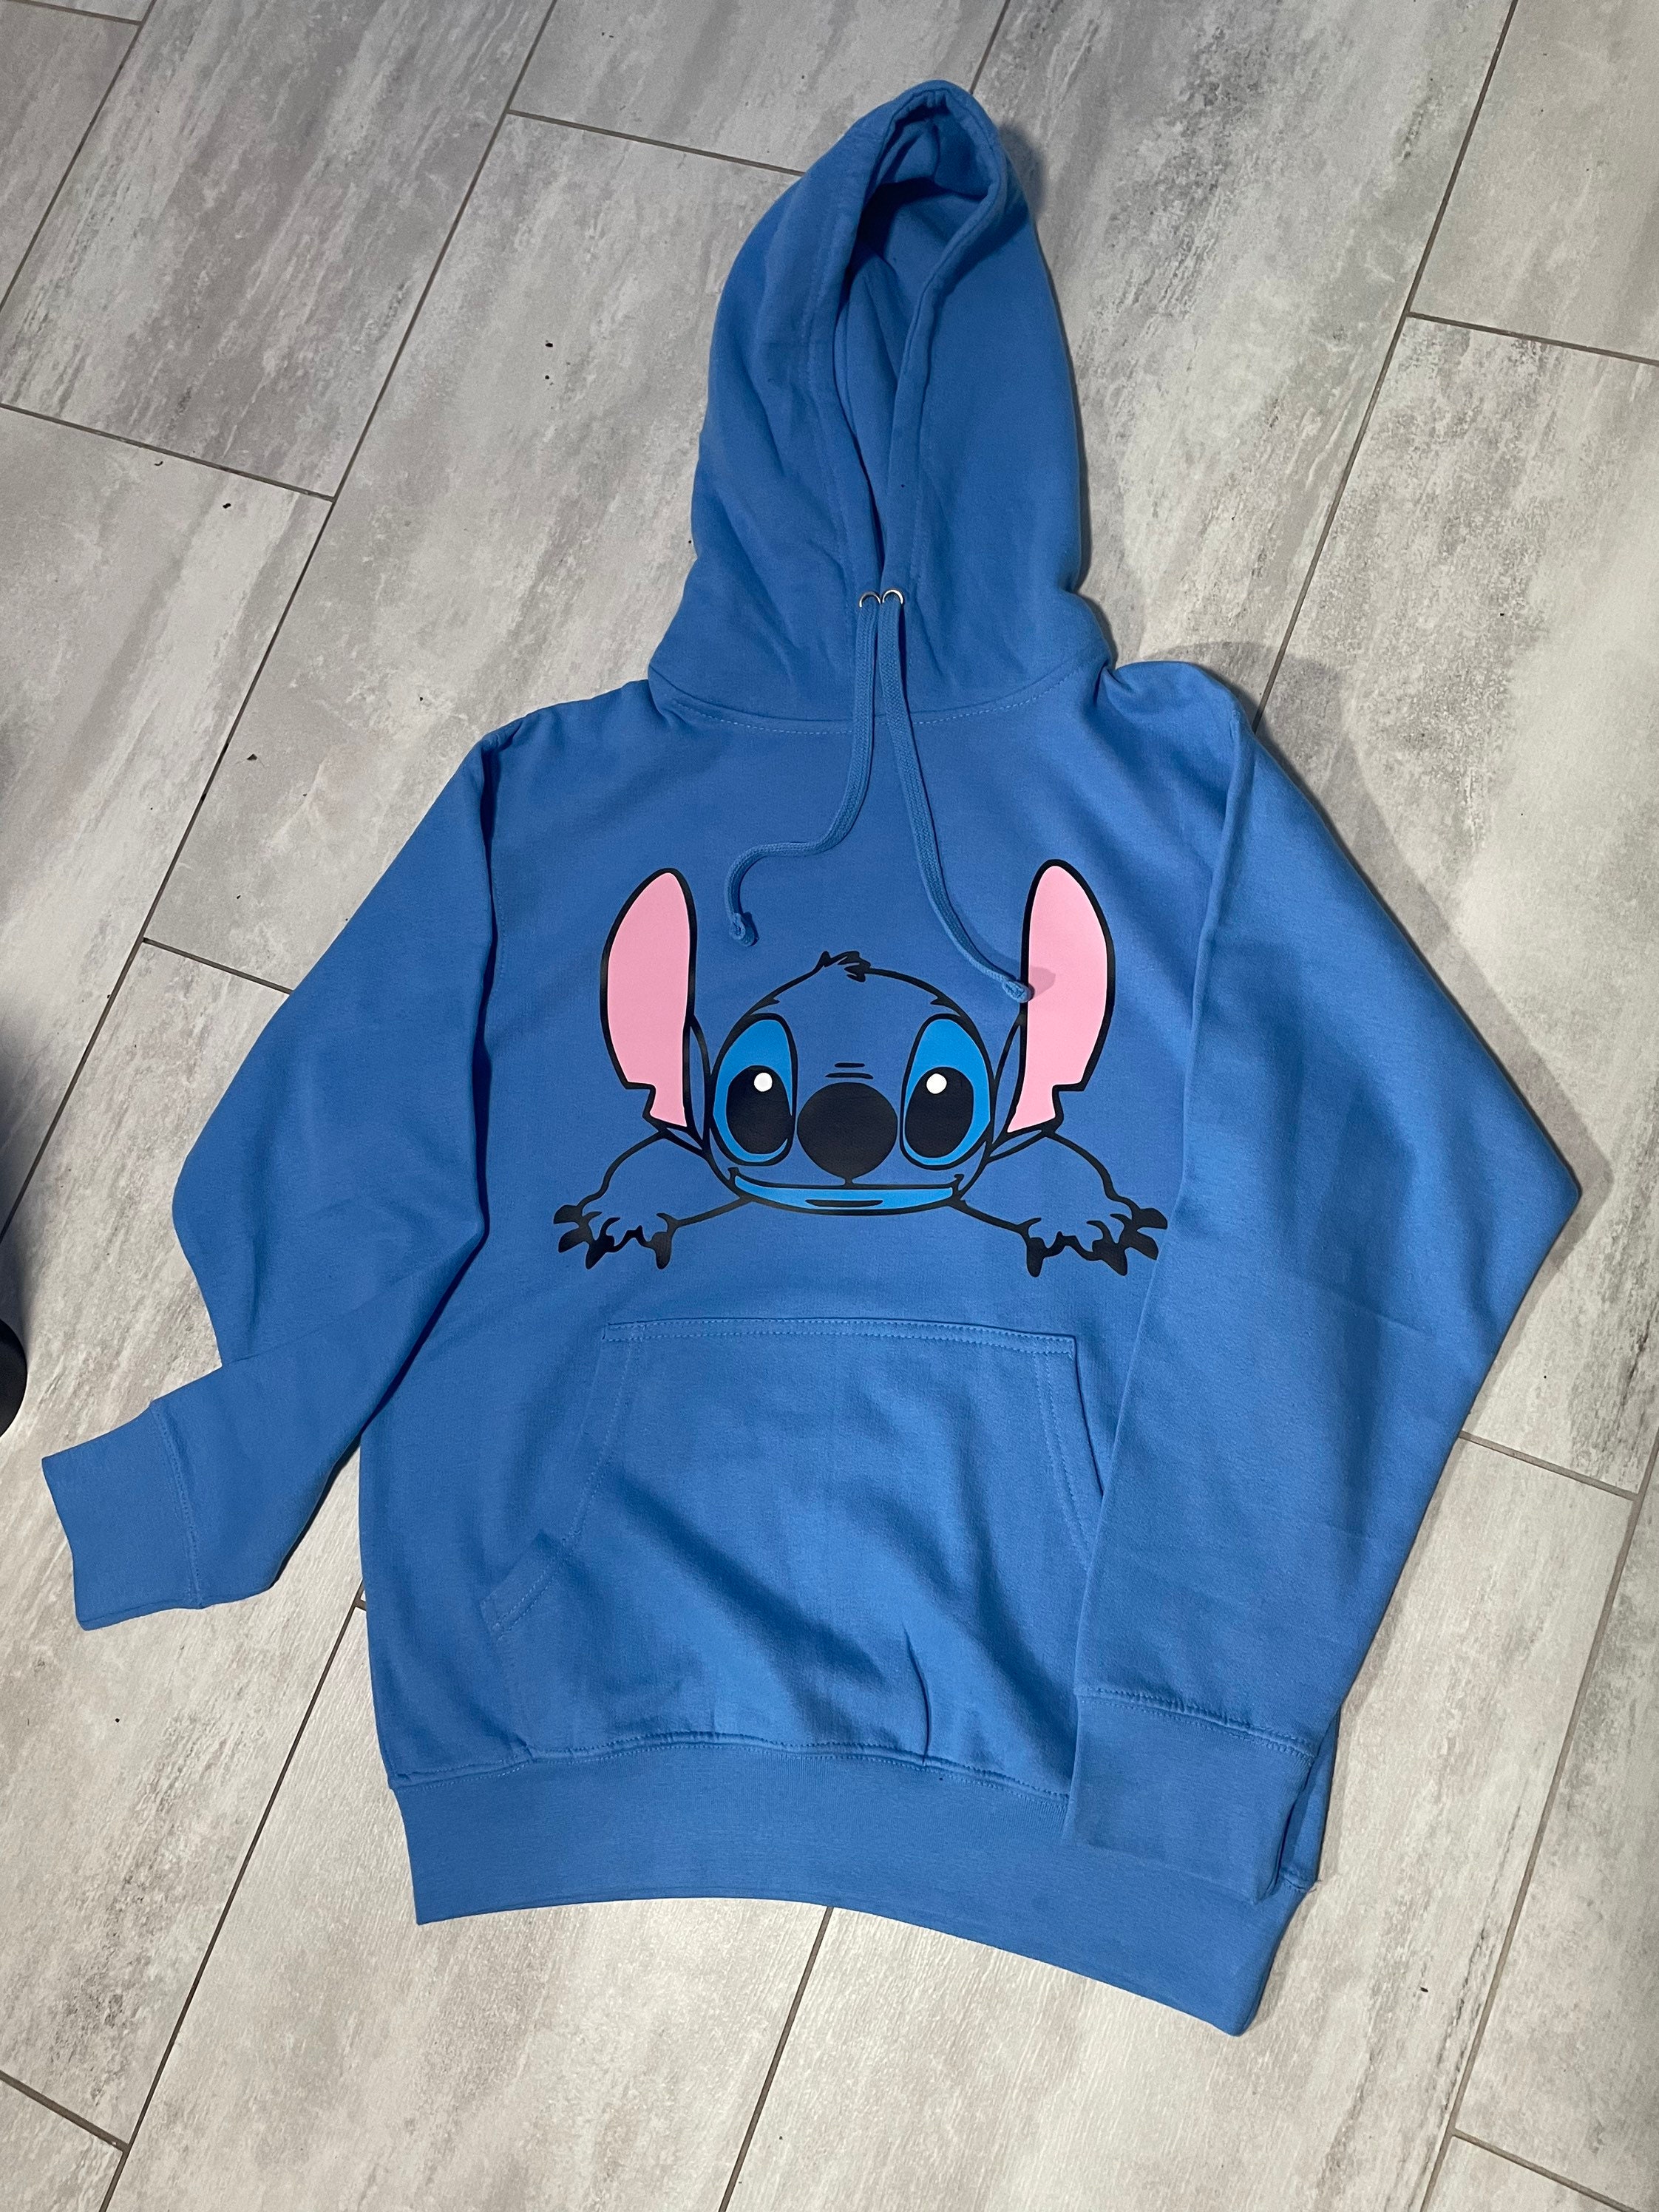 Stitch hoodie